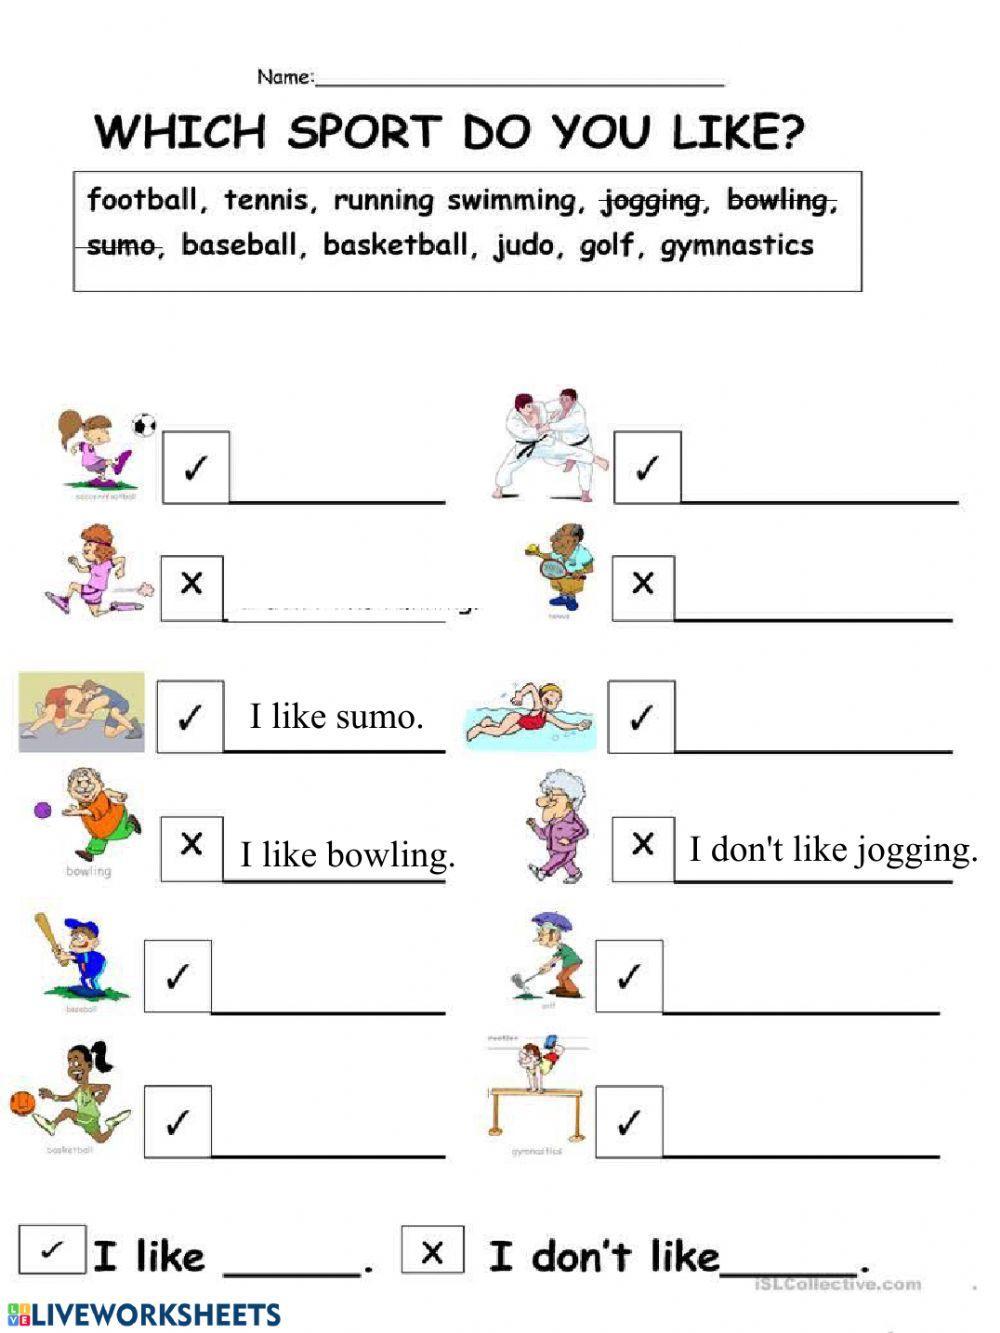 Do you like? Sports worksheet | Live Worksheets